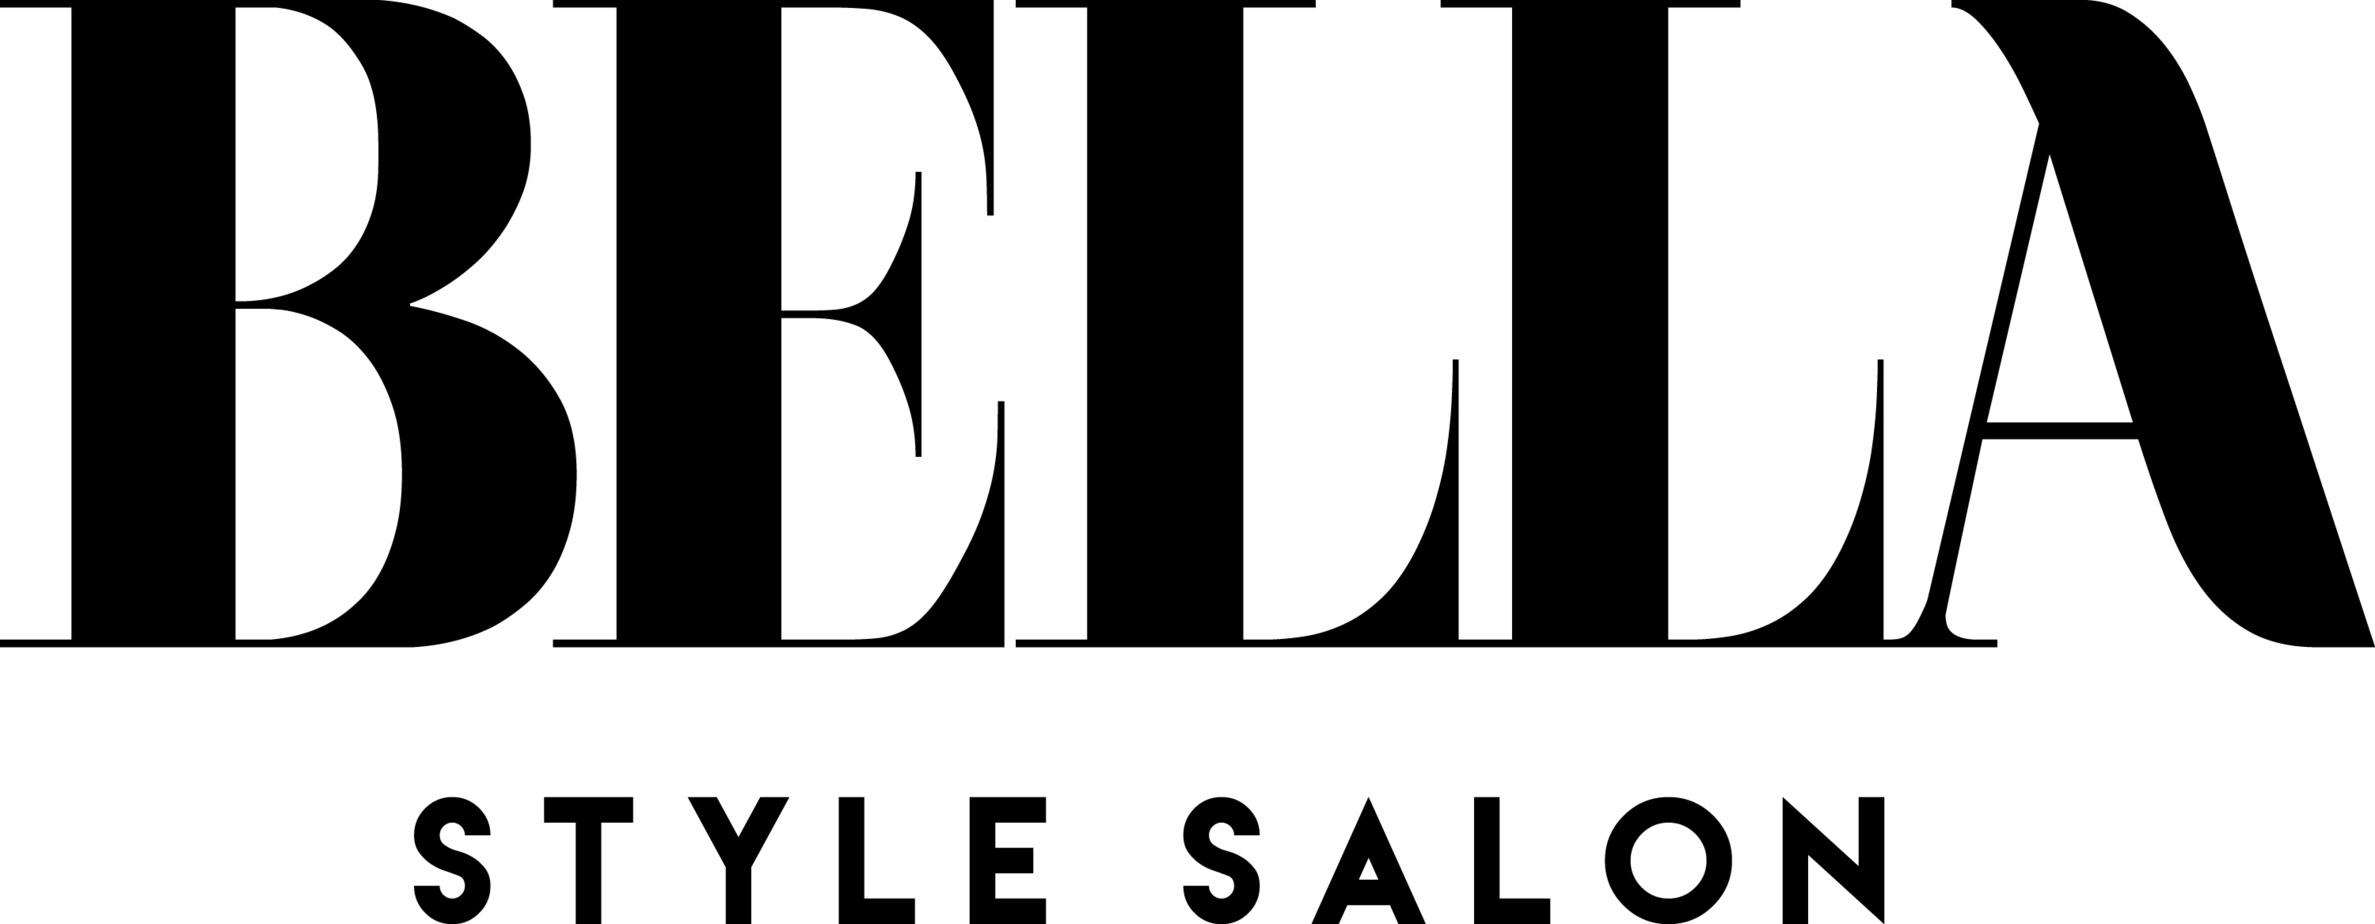 Press | Bella Style Salon Slidell, LA | Top 200 Salon in the Country